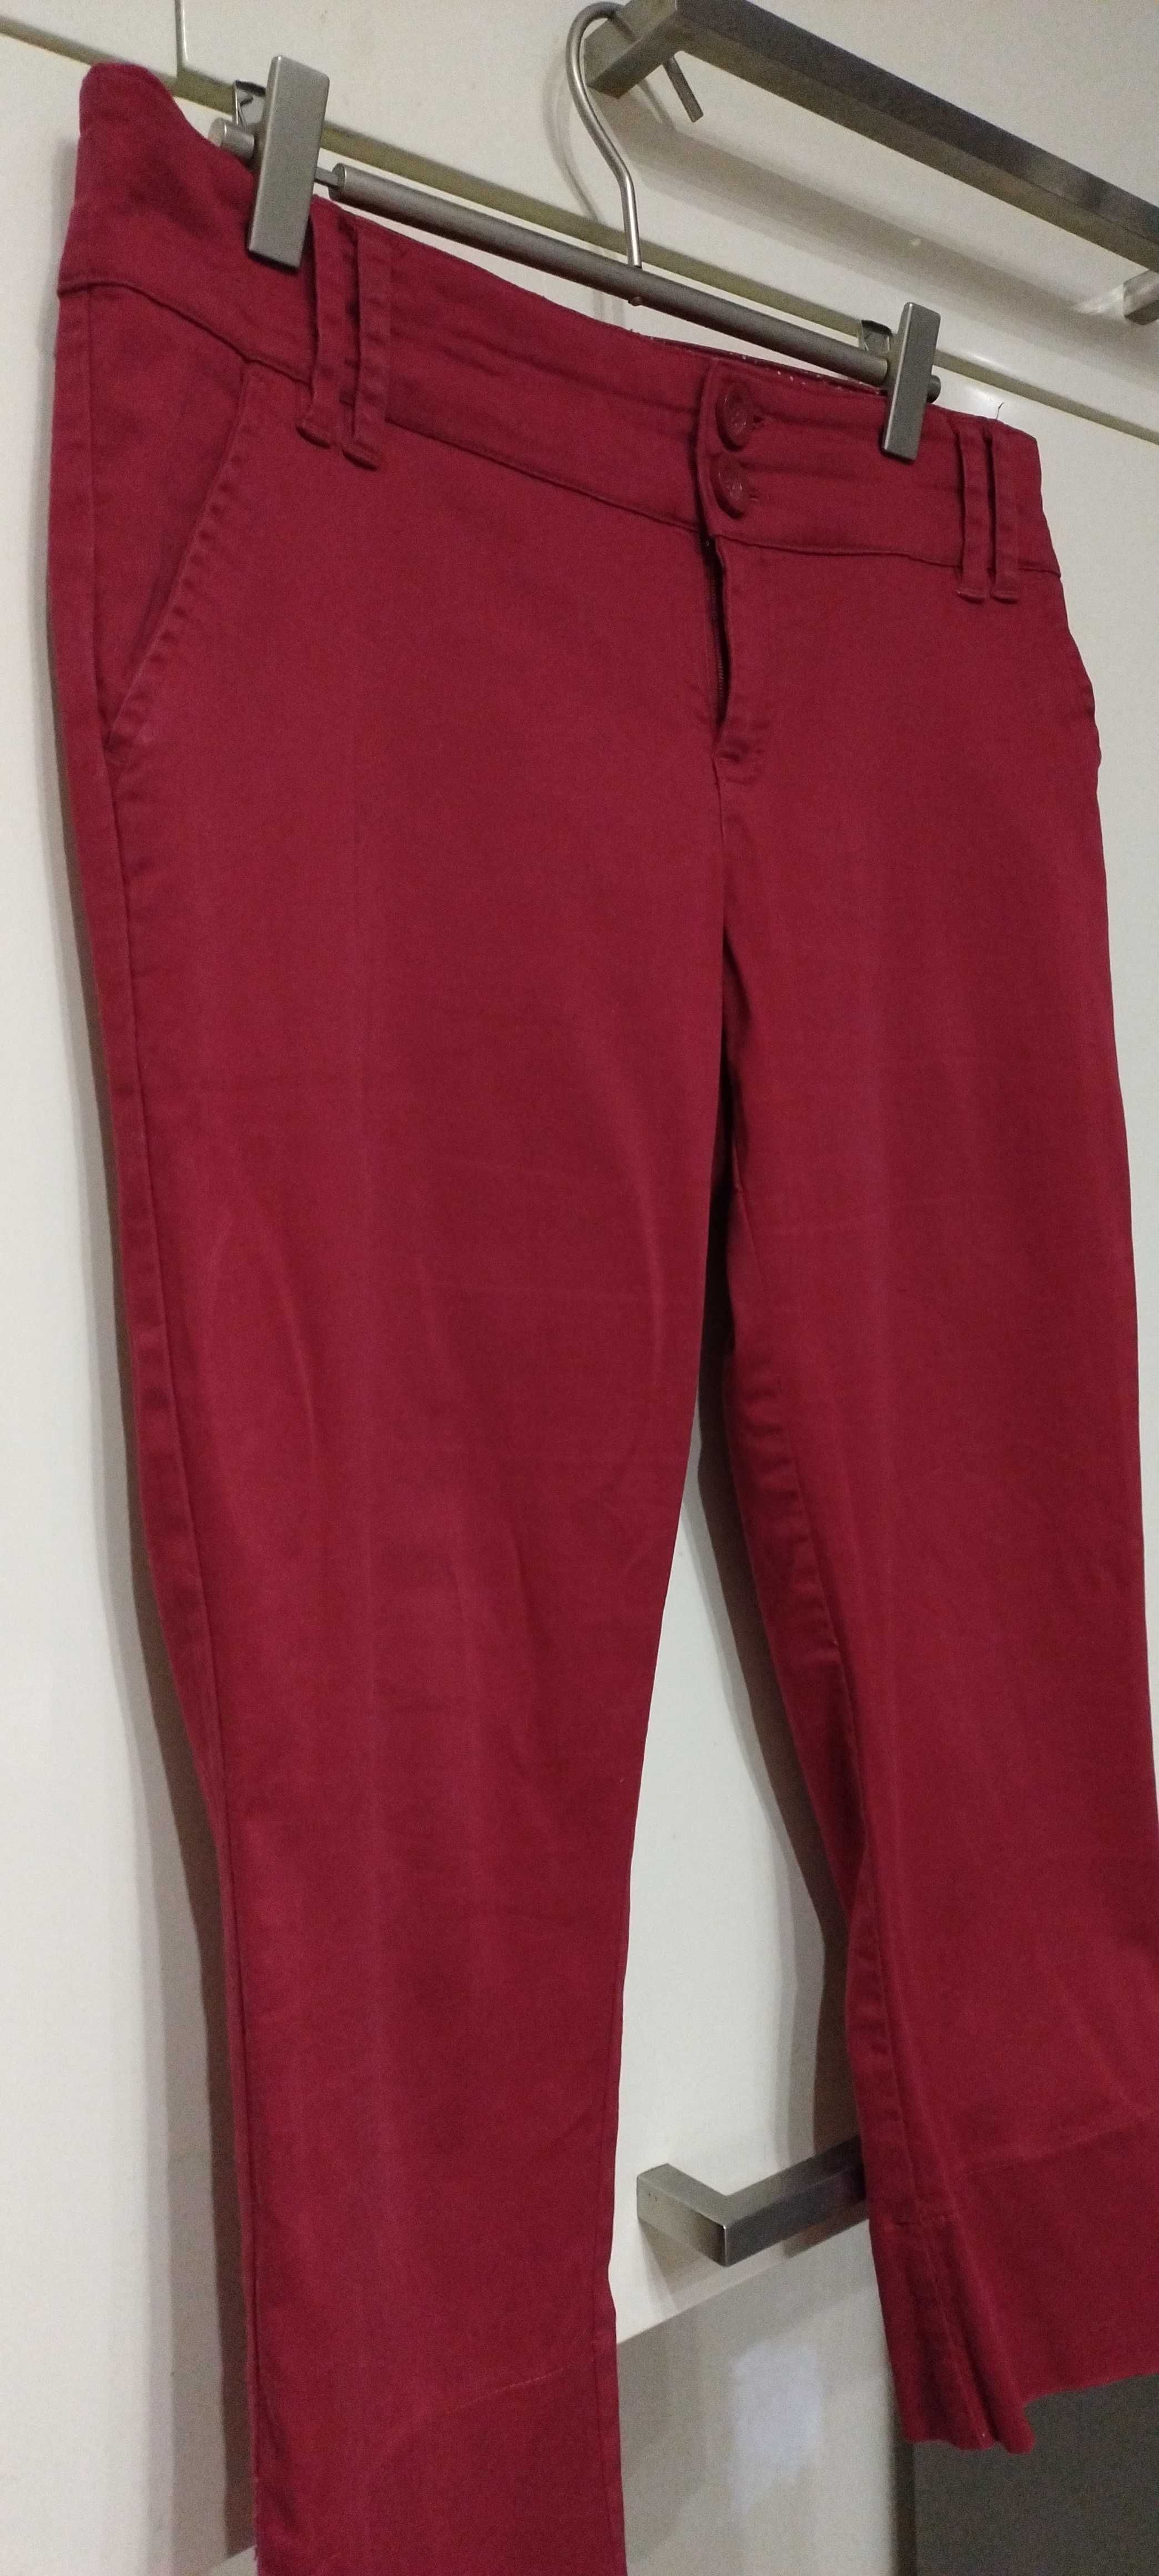 Spodnie damskie 3/4 -czerwone.